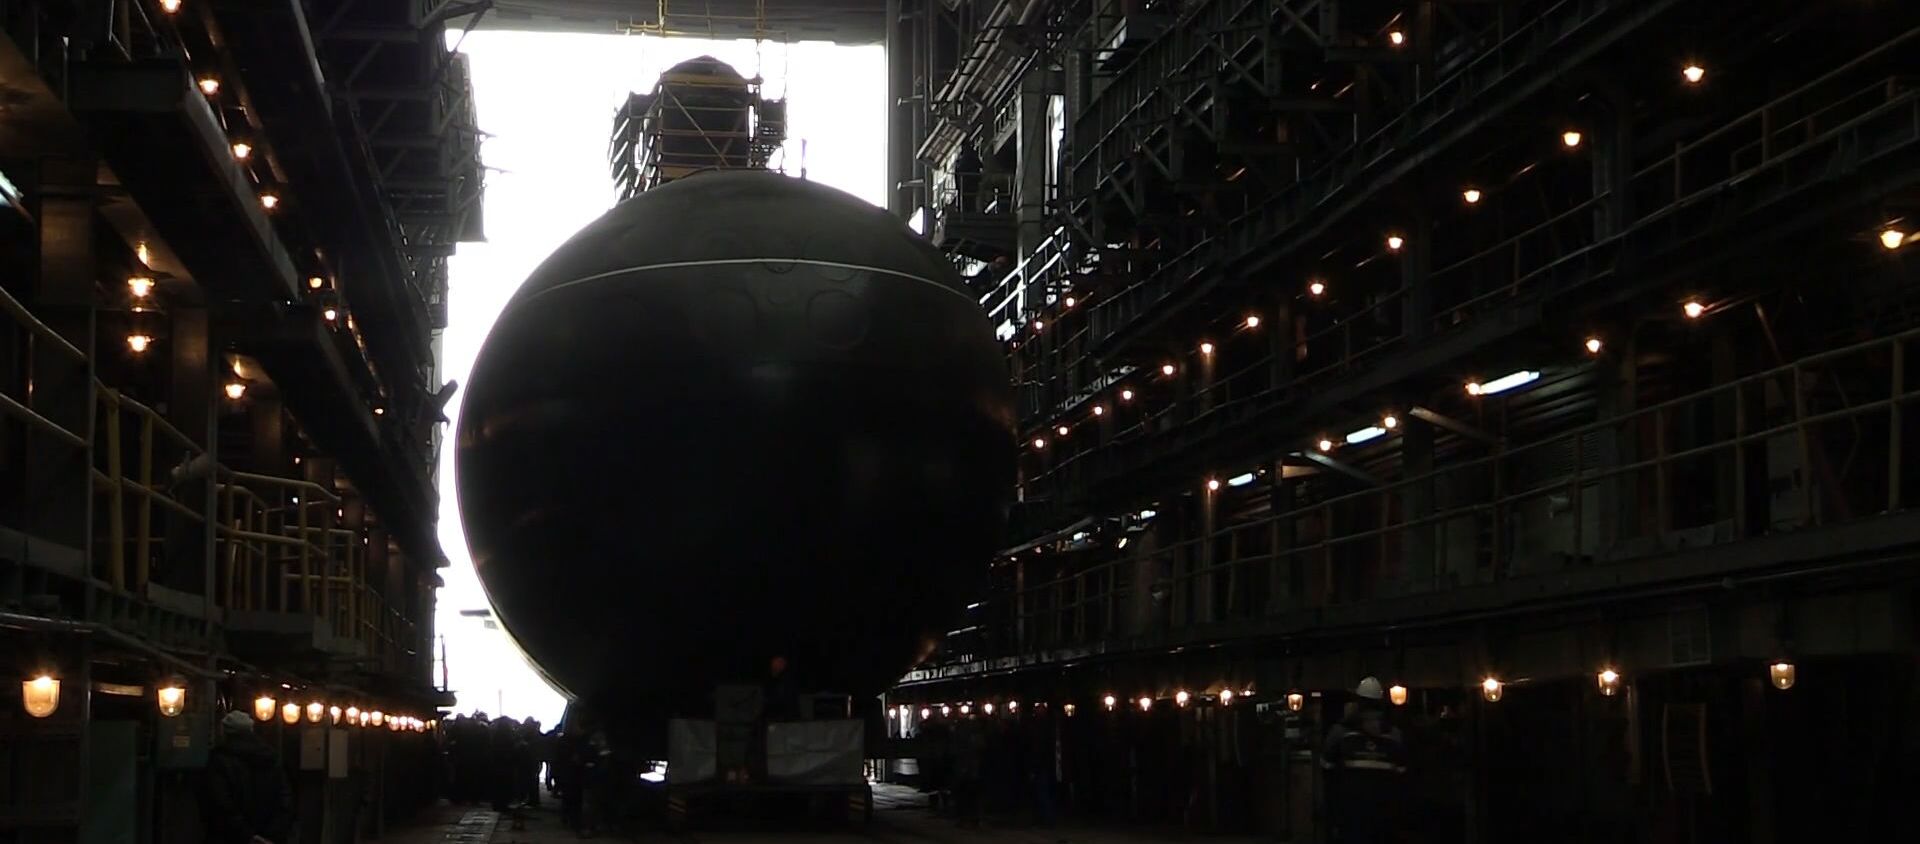 Кадры спуска на воду первой подлодки для Тихоокеанского флота РФ - Sputnik Latvija, 1920, 30.03.2019